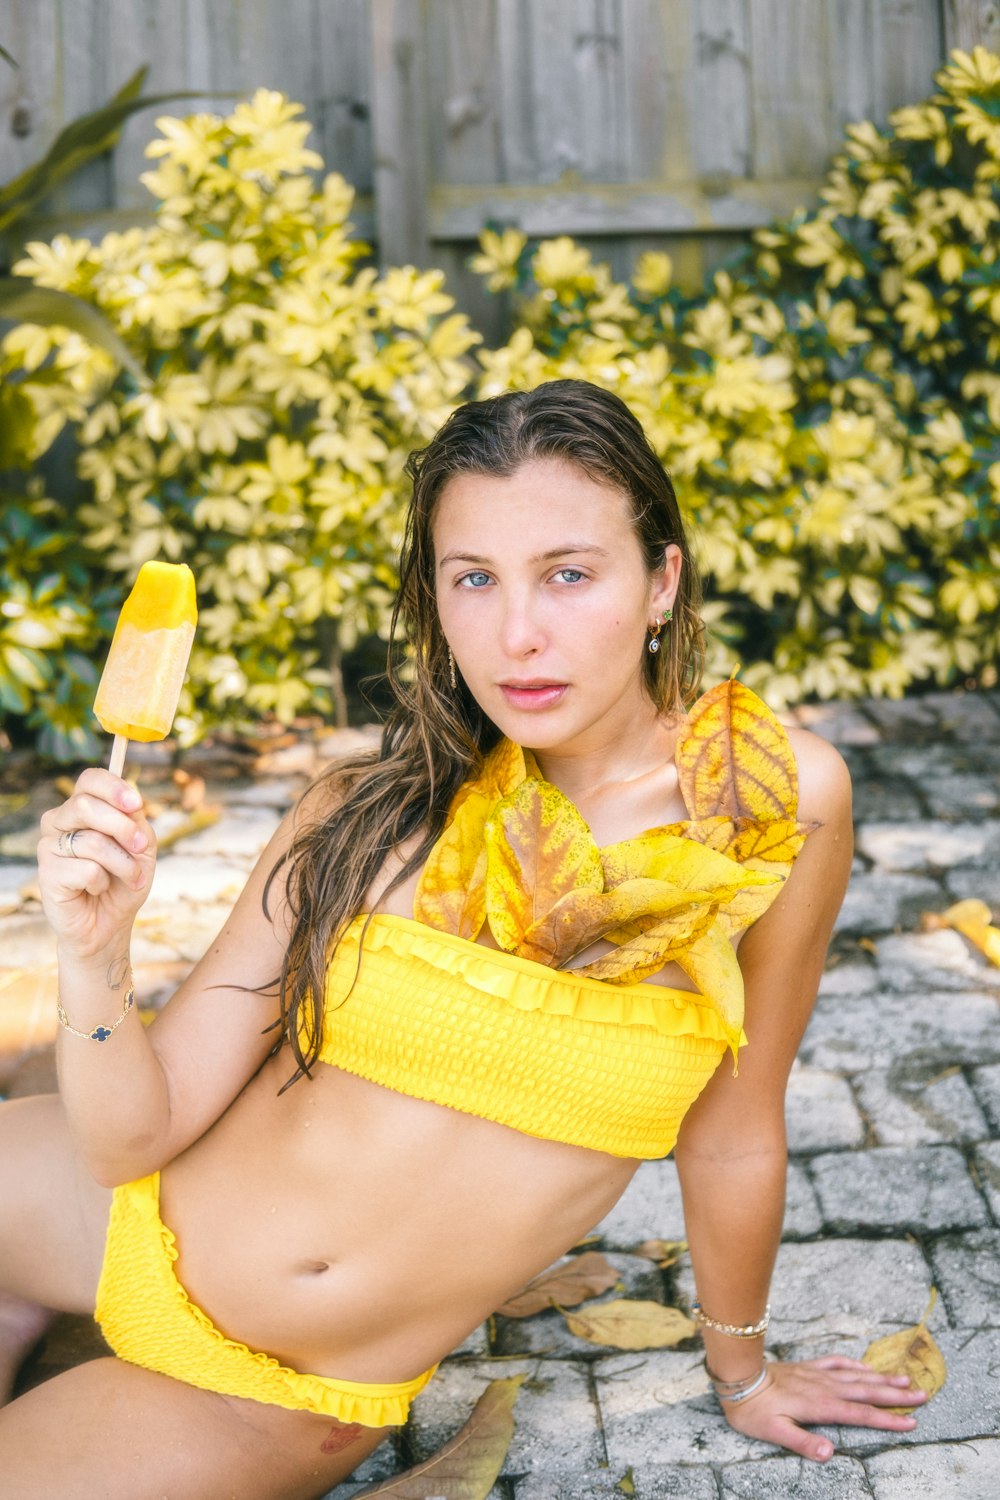 Una donna in un bikini giallo che tiene una banana